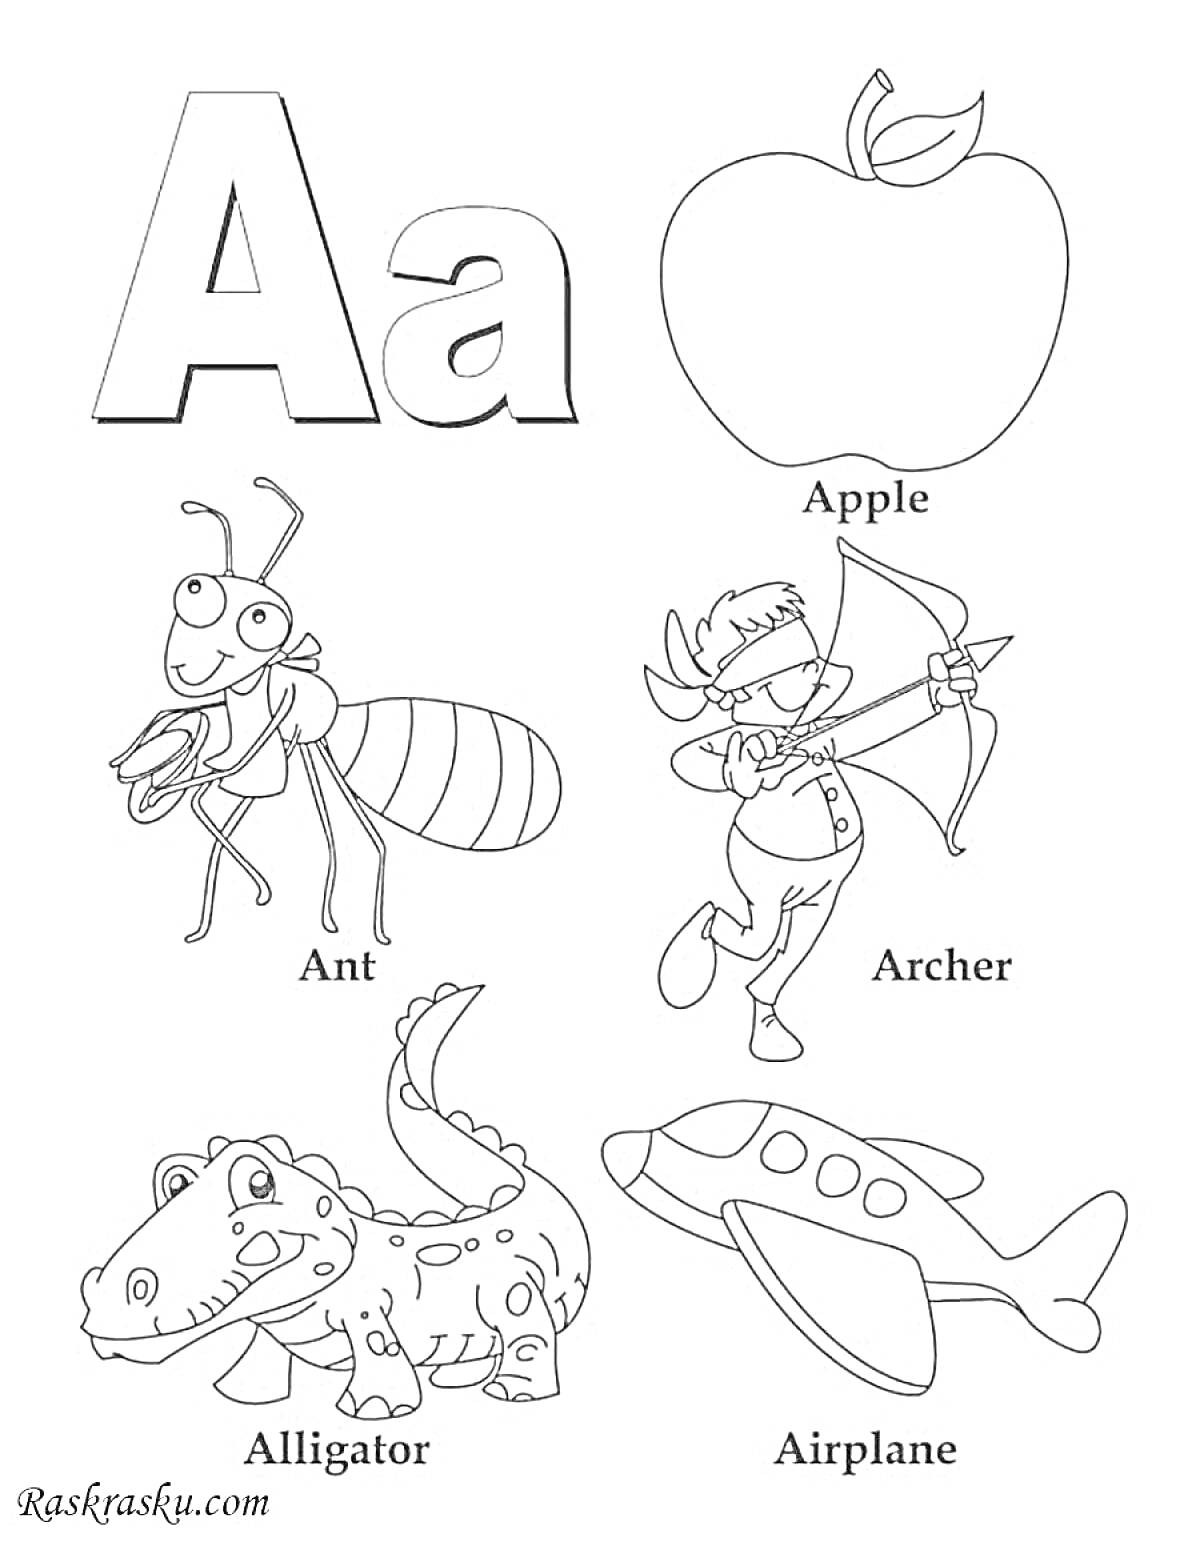 Алфавит - буква A с муравьем, яблоком, лучником, аллигатором и самолетом